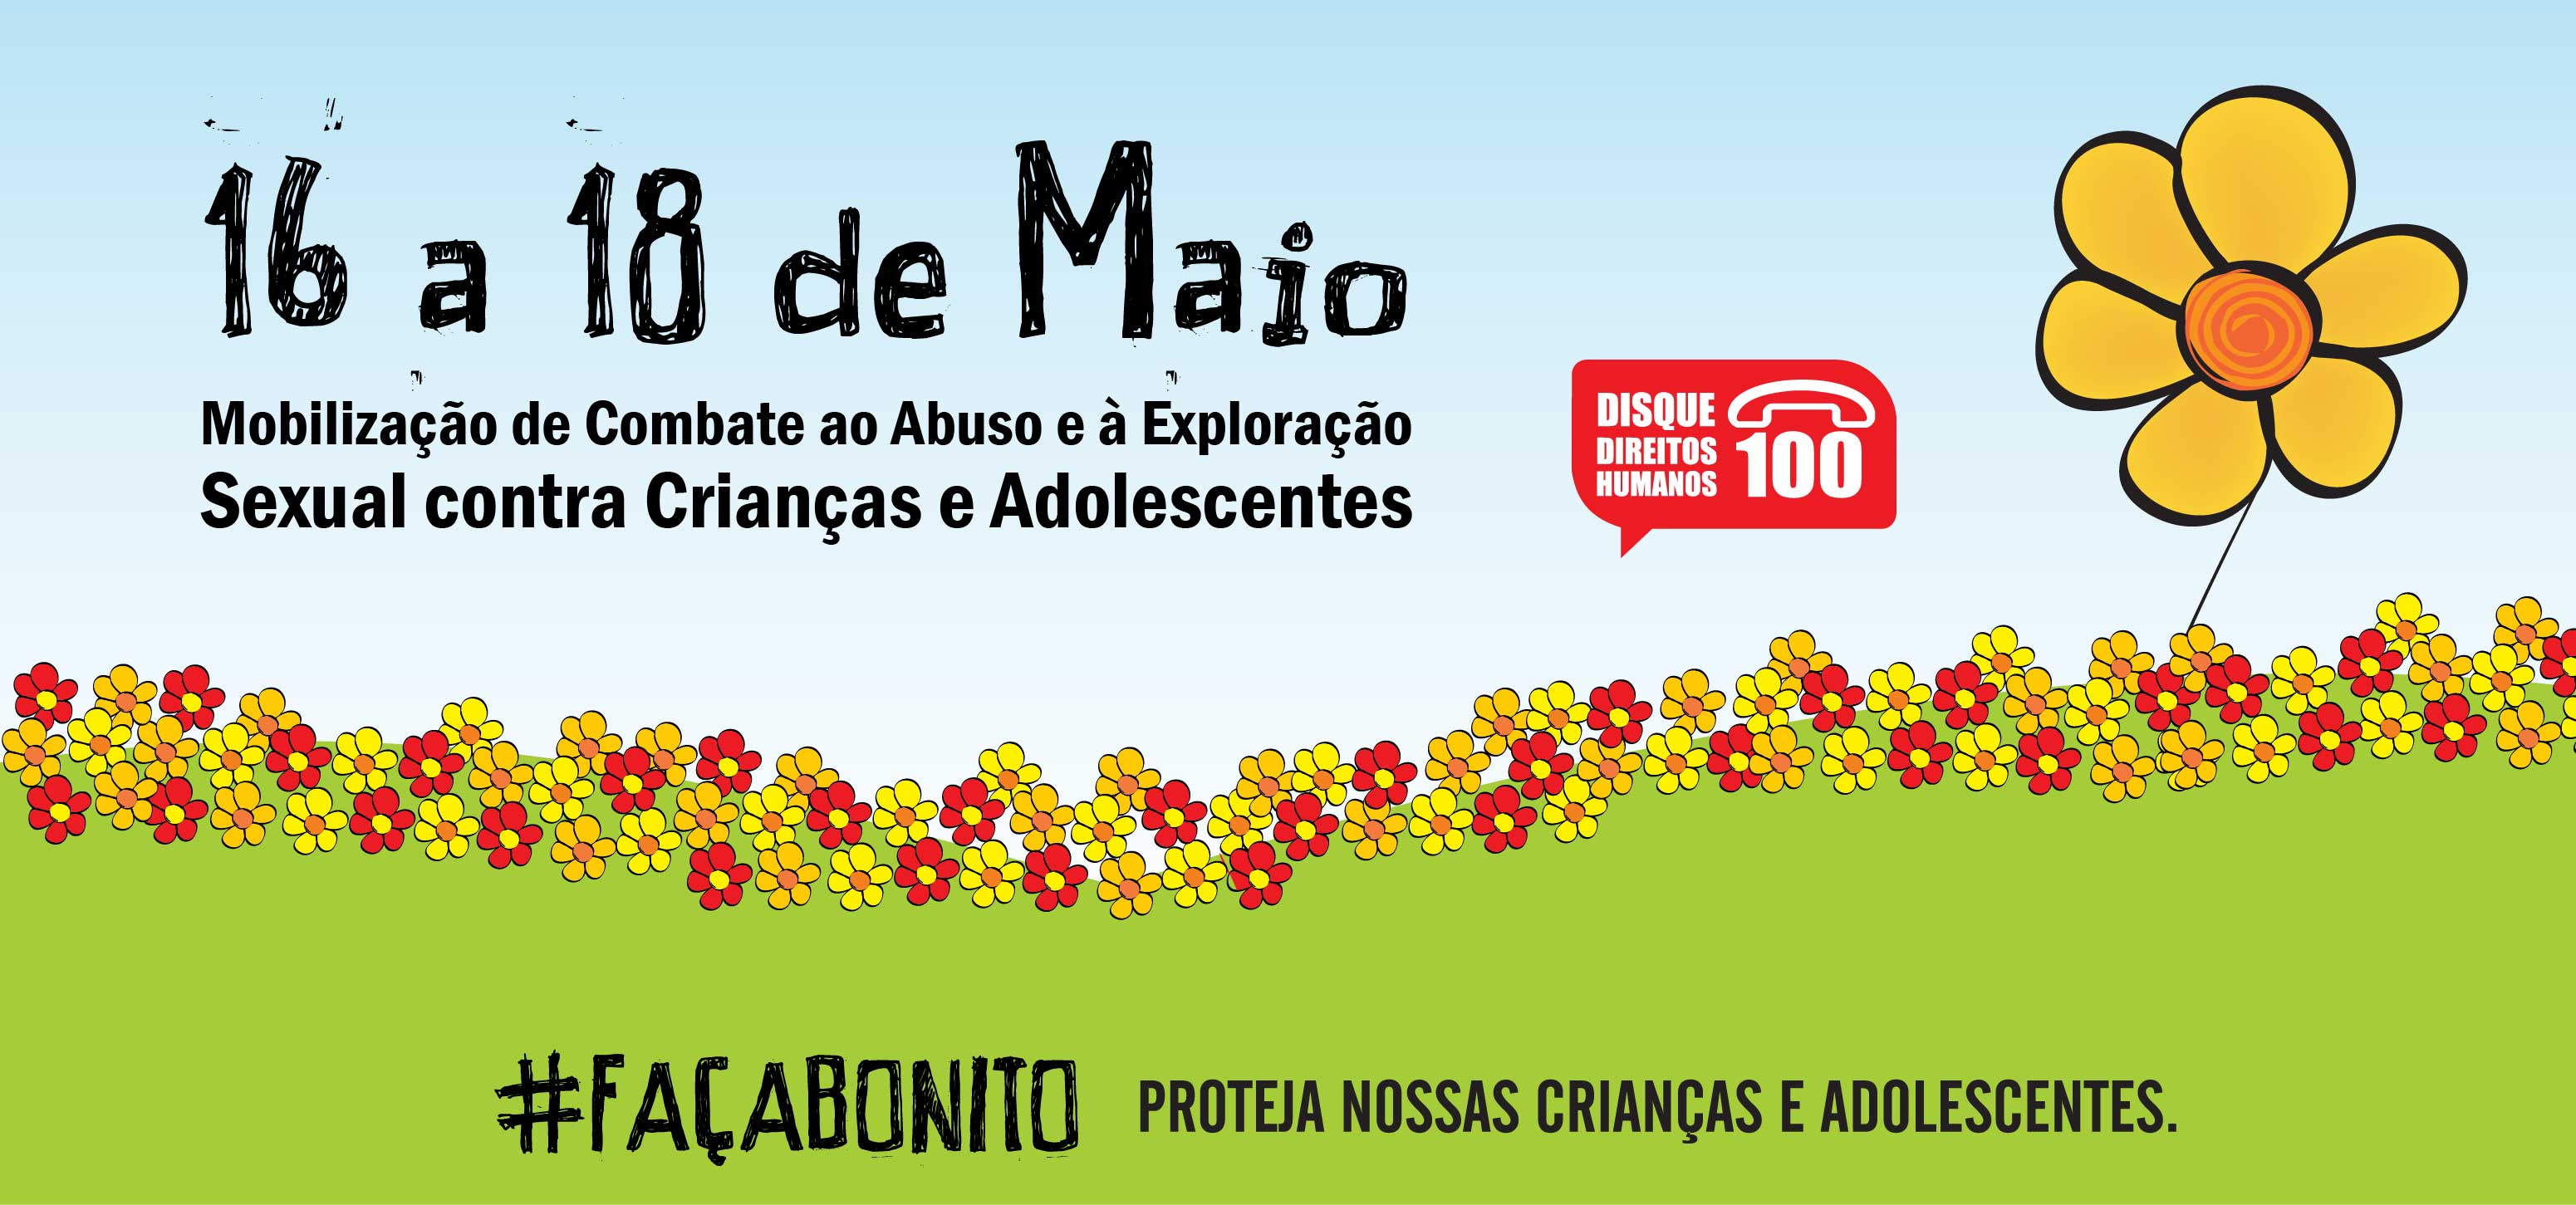 São Gonçalo promove campanha contra o abuso sexual infantil